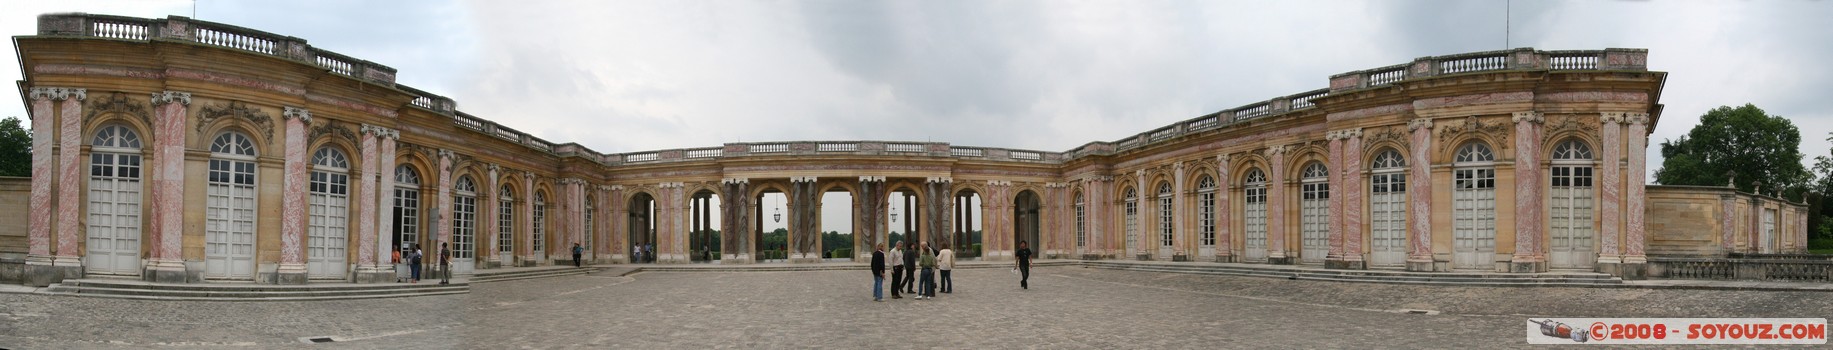 Le Grand Trianon - panoramique
Mots-clés: panorama patrimoine unesco